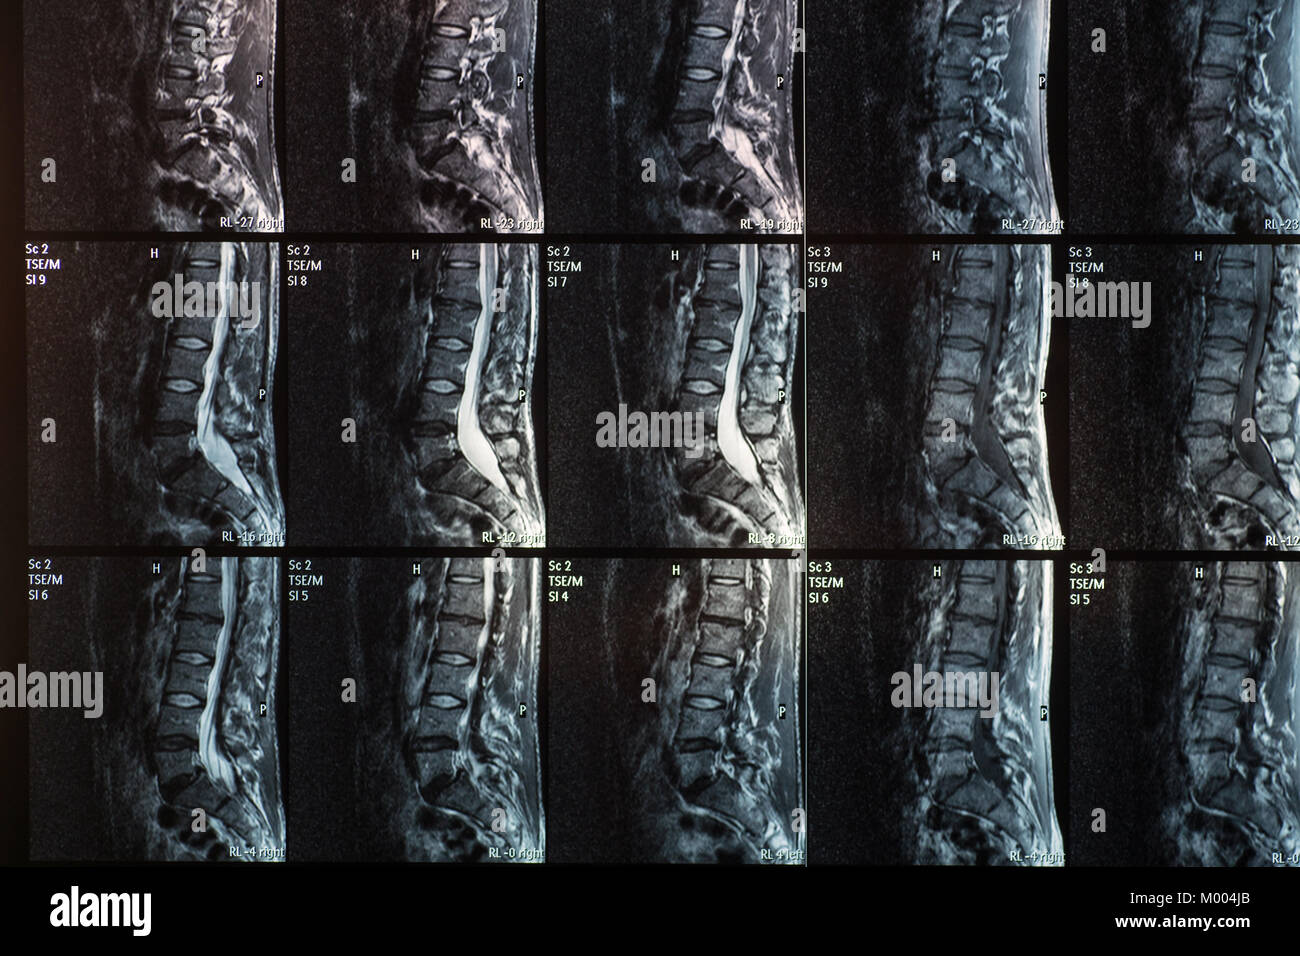 Immagini a risonanza magnetica della colonna vertebrale umana con lordosi, ernia discale e spondylolisthesis l5-s1 Foto Stock